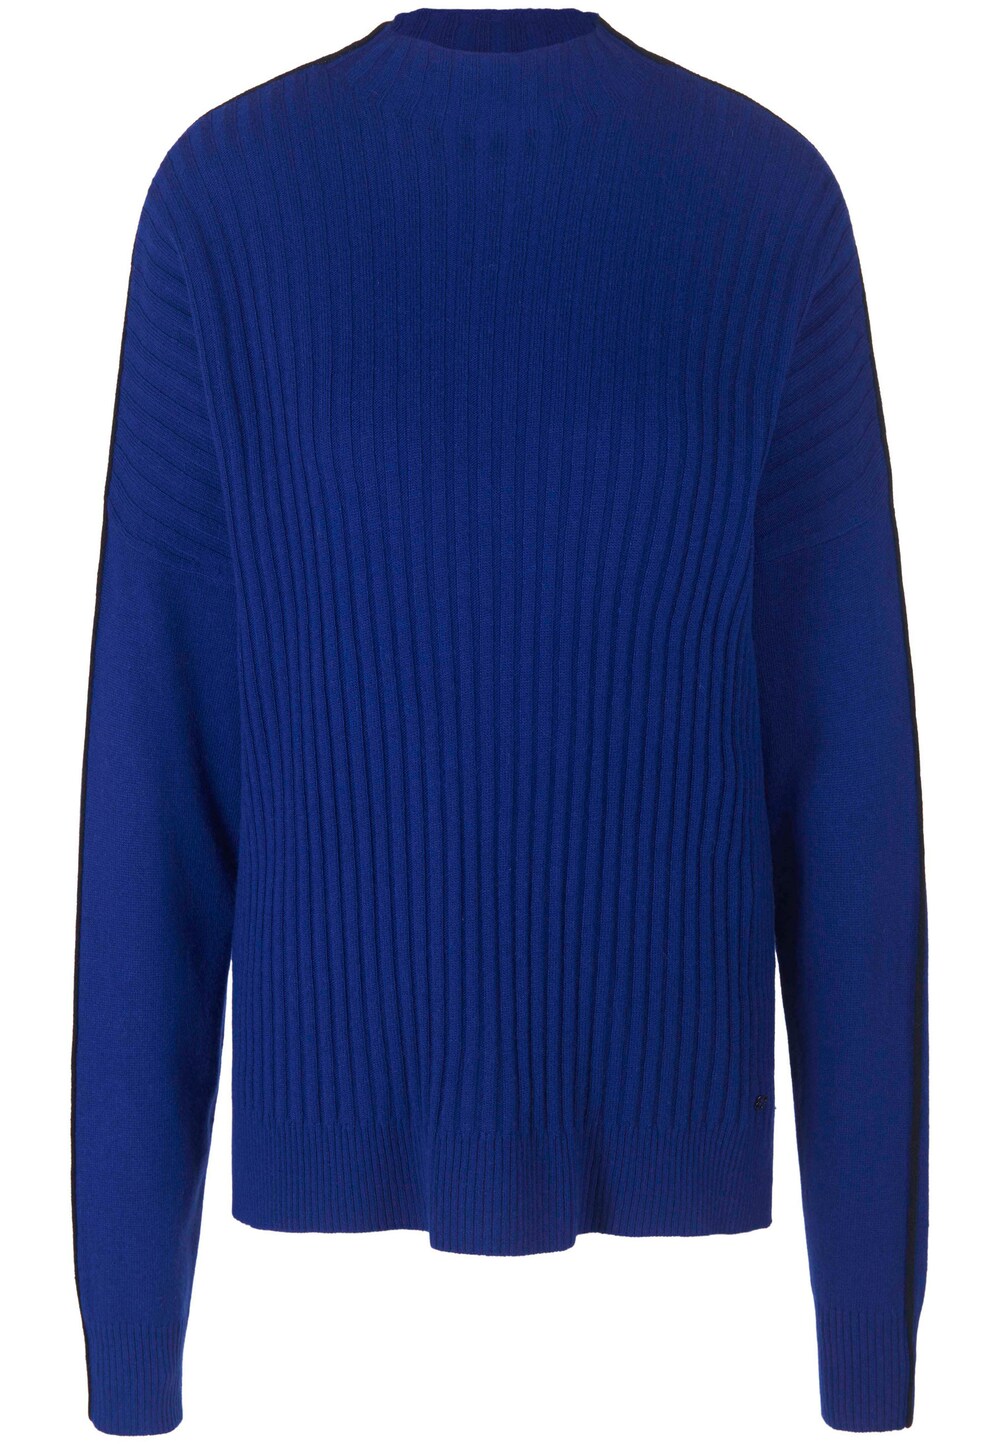 Свитер Basler, синий basler пуловер